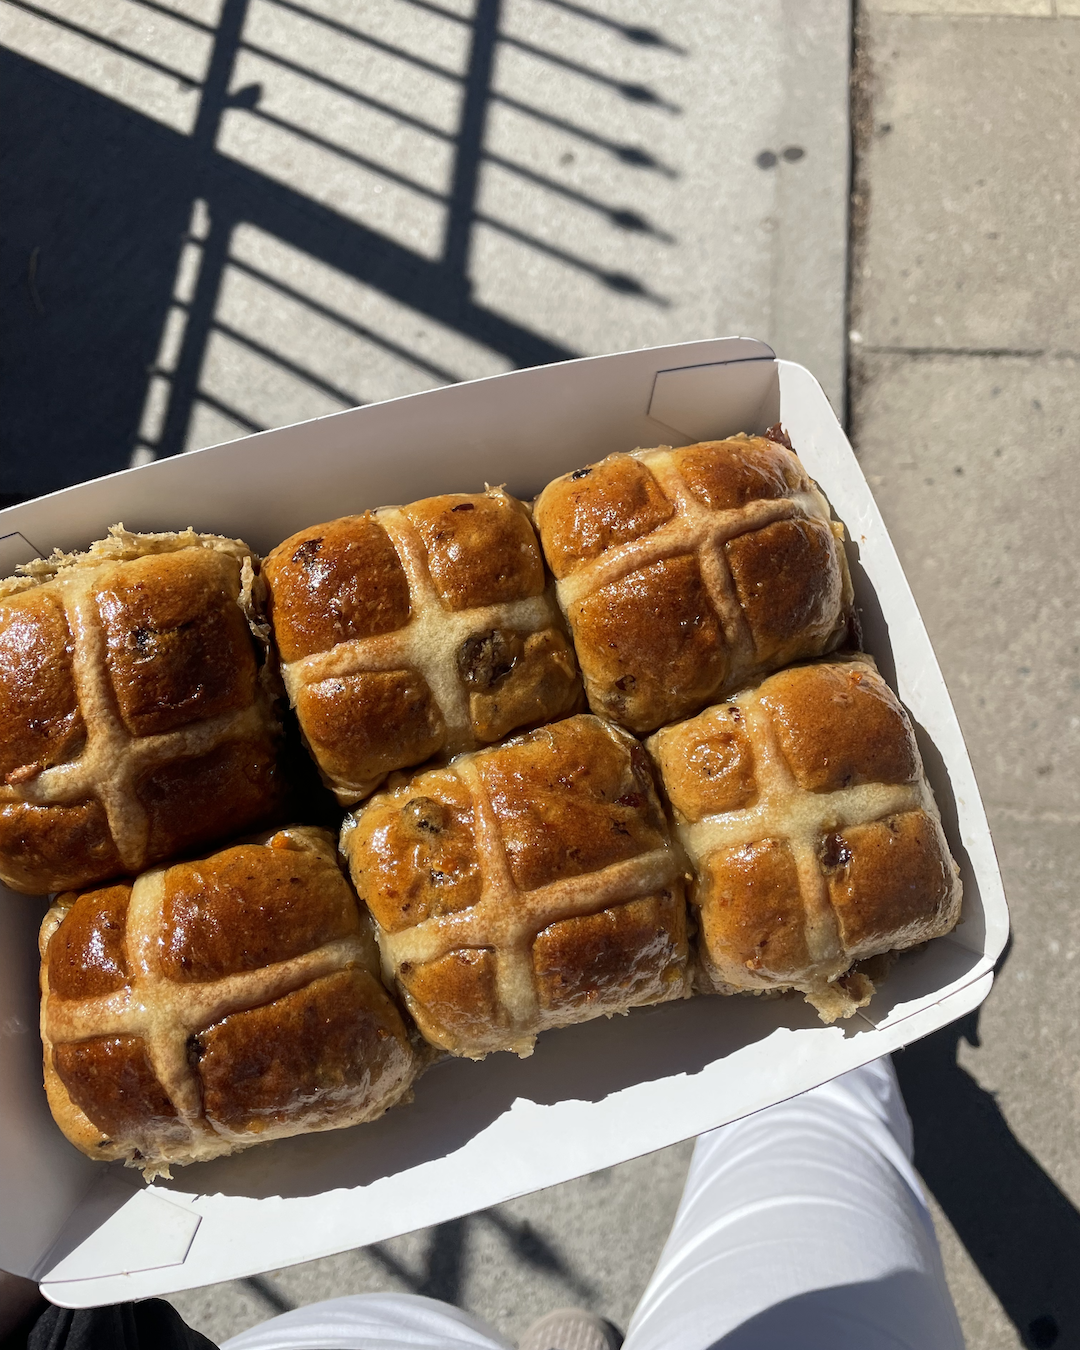 A tray of hot cross buns at Chu Bakery